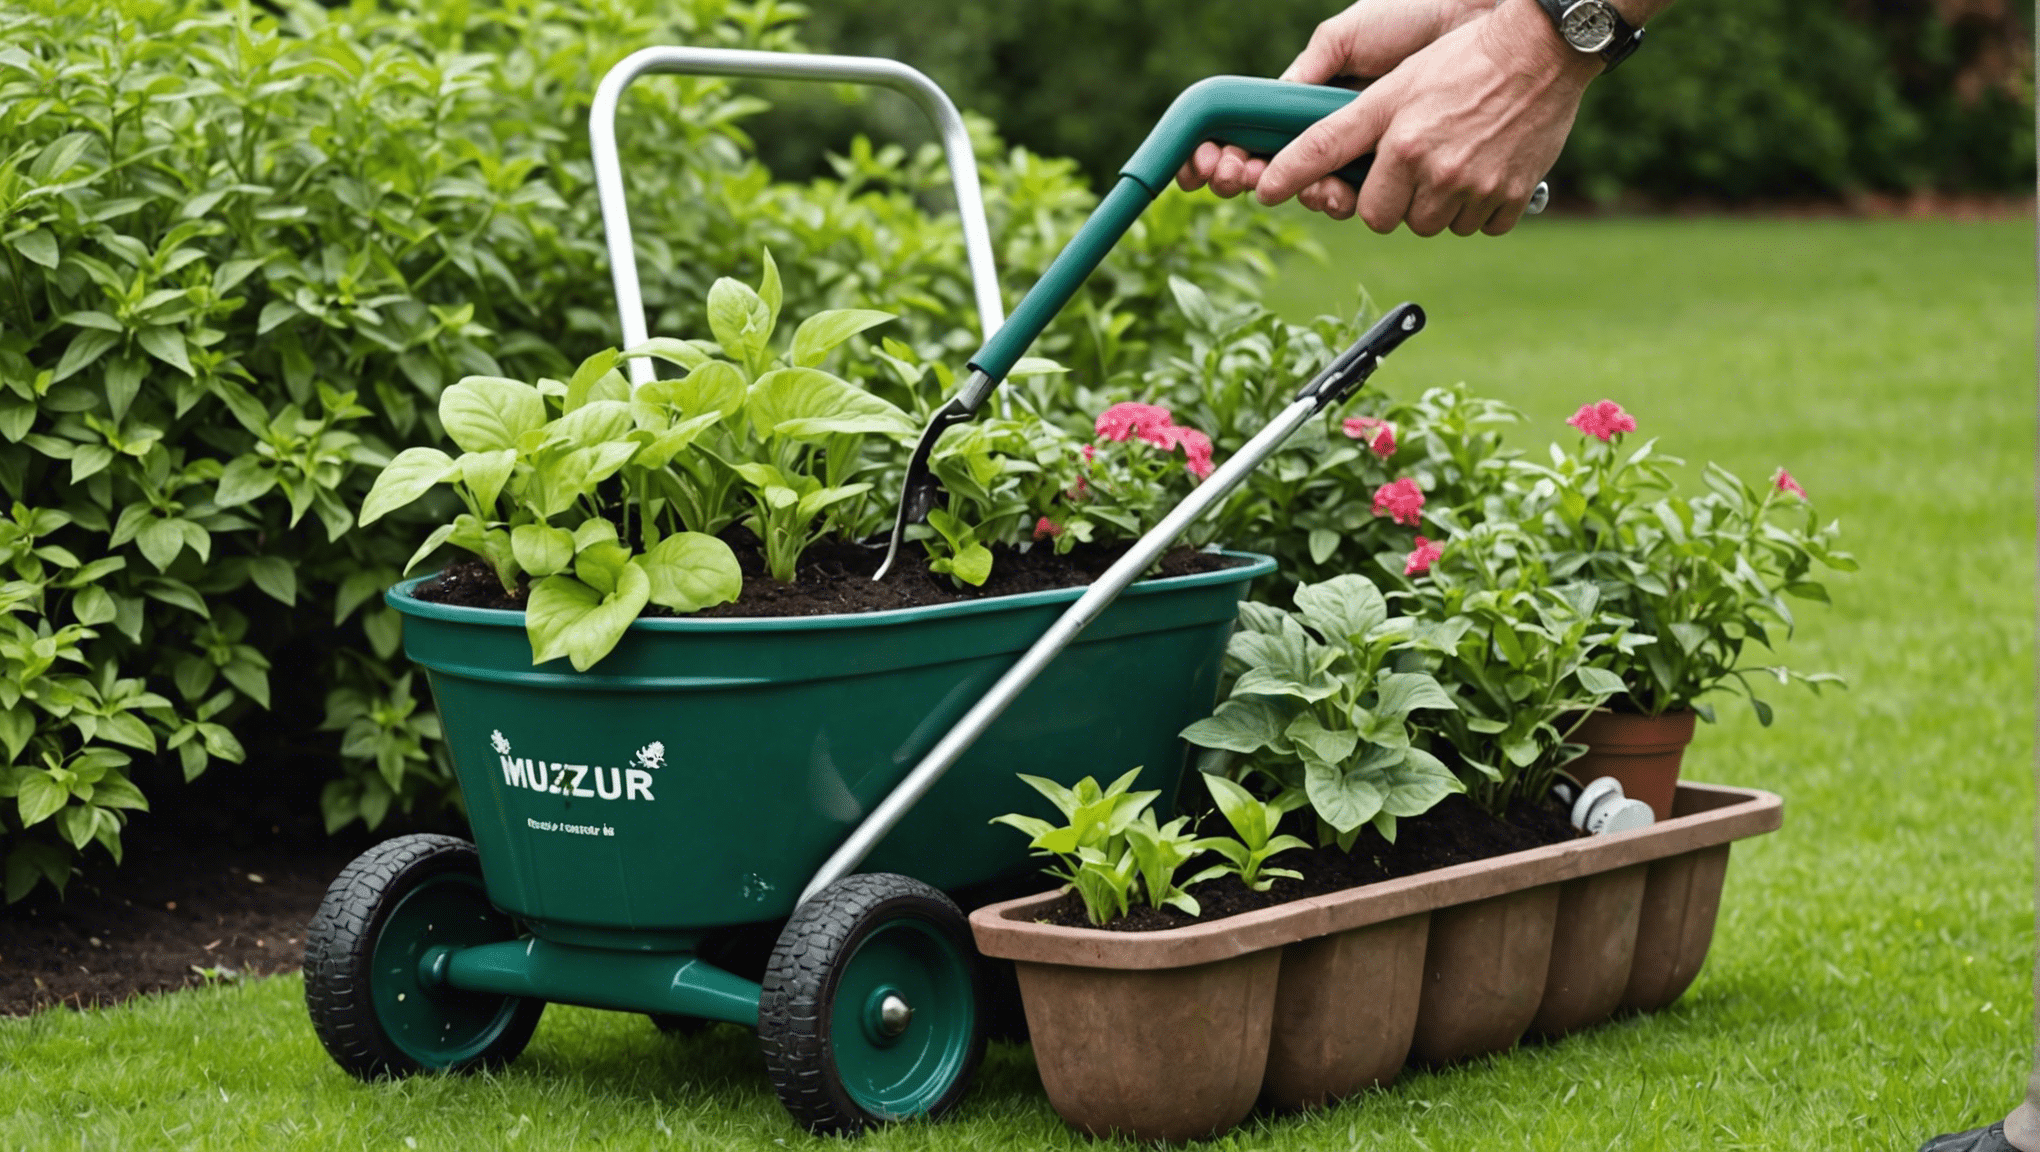 découvrez une fantastique sélection de cadeaux de jardinage pour hommes à des prix abordables. trouvez le cadeau parfait pour les hommes à la main verte dans votre vie.